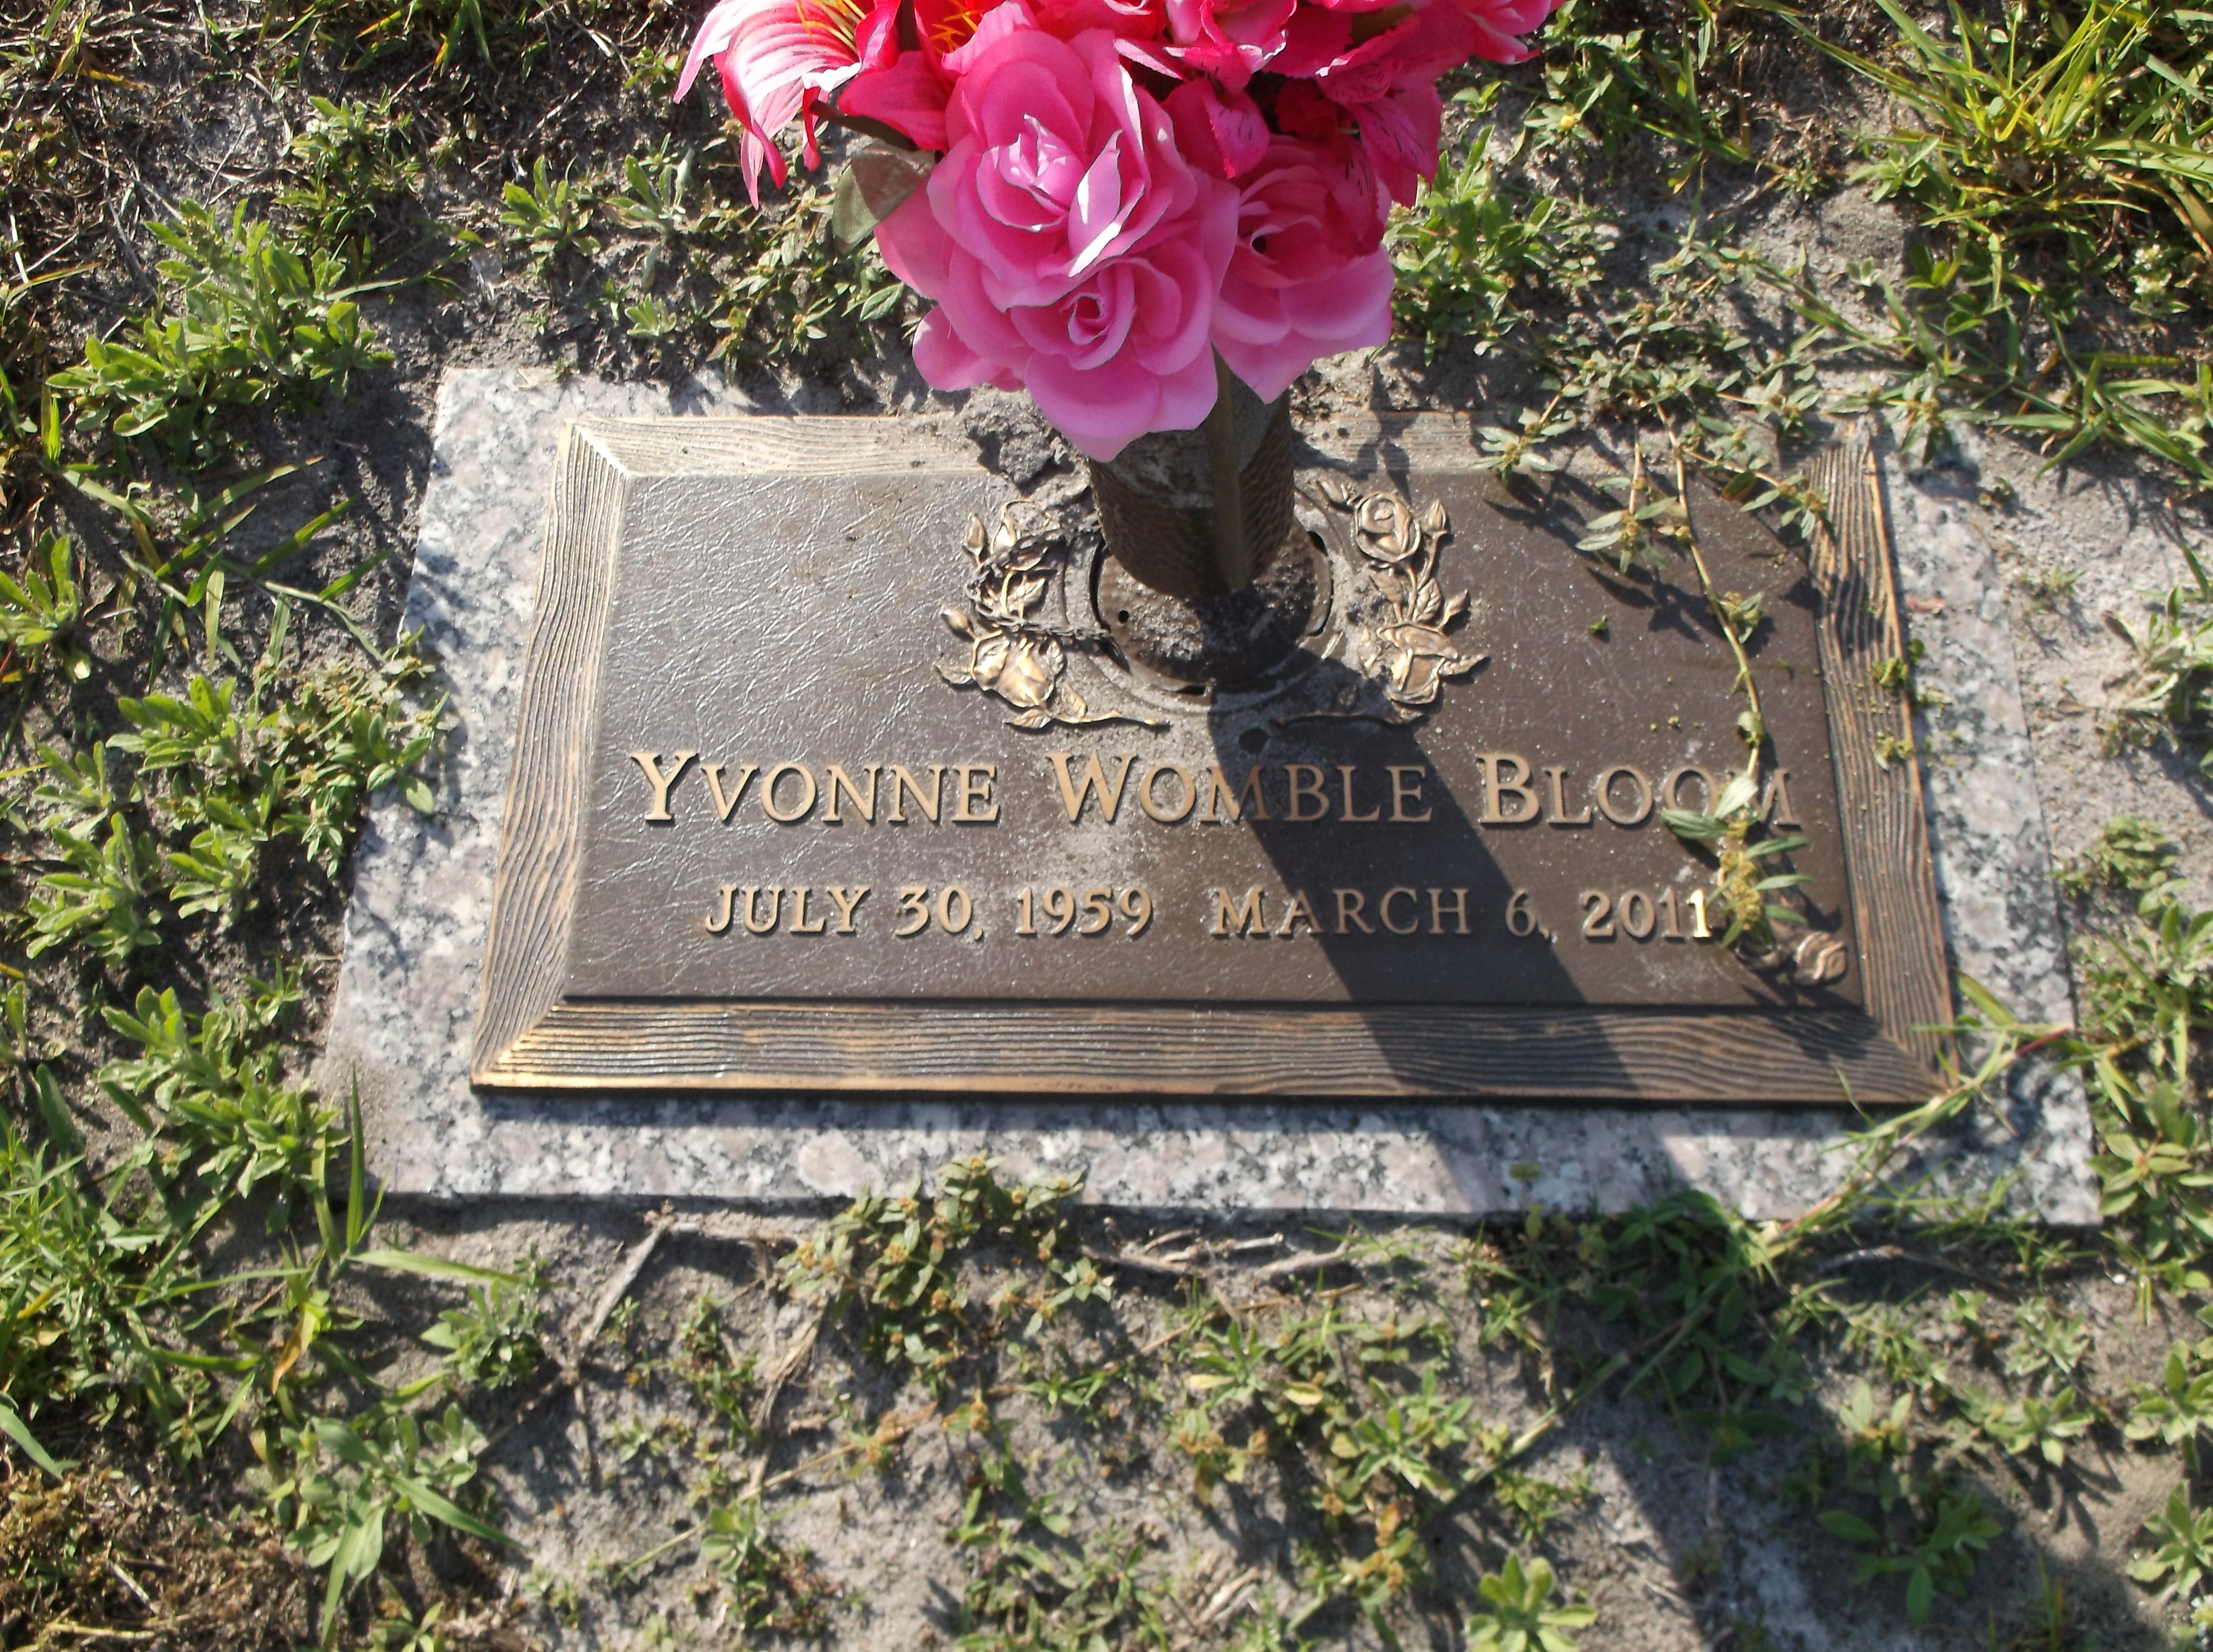 Yvonne Womble Bloom